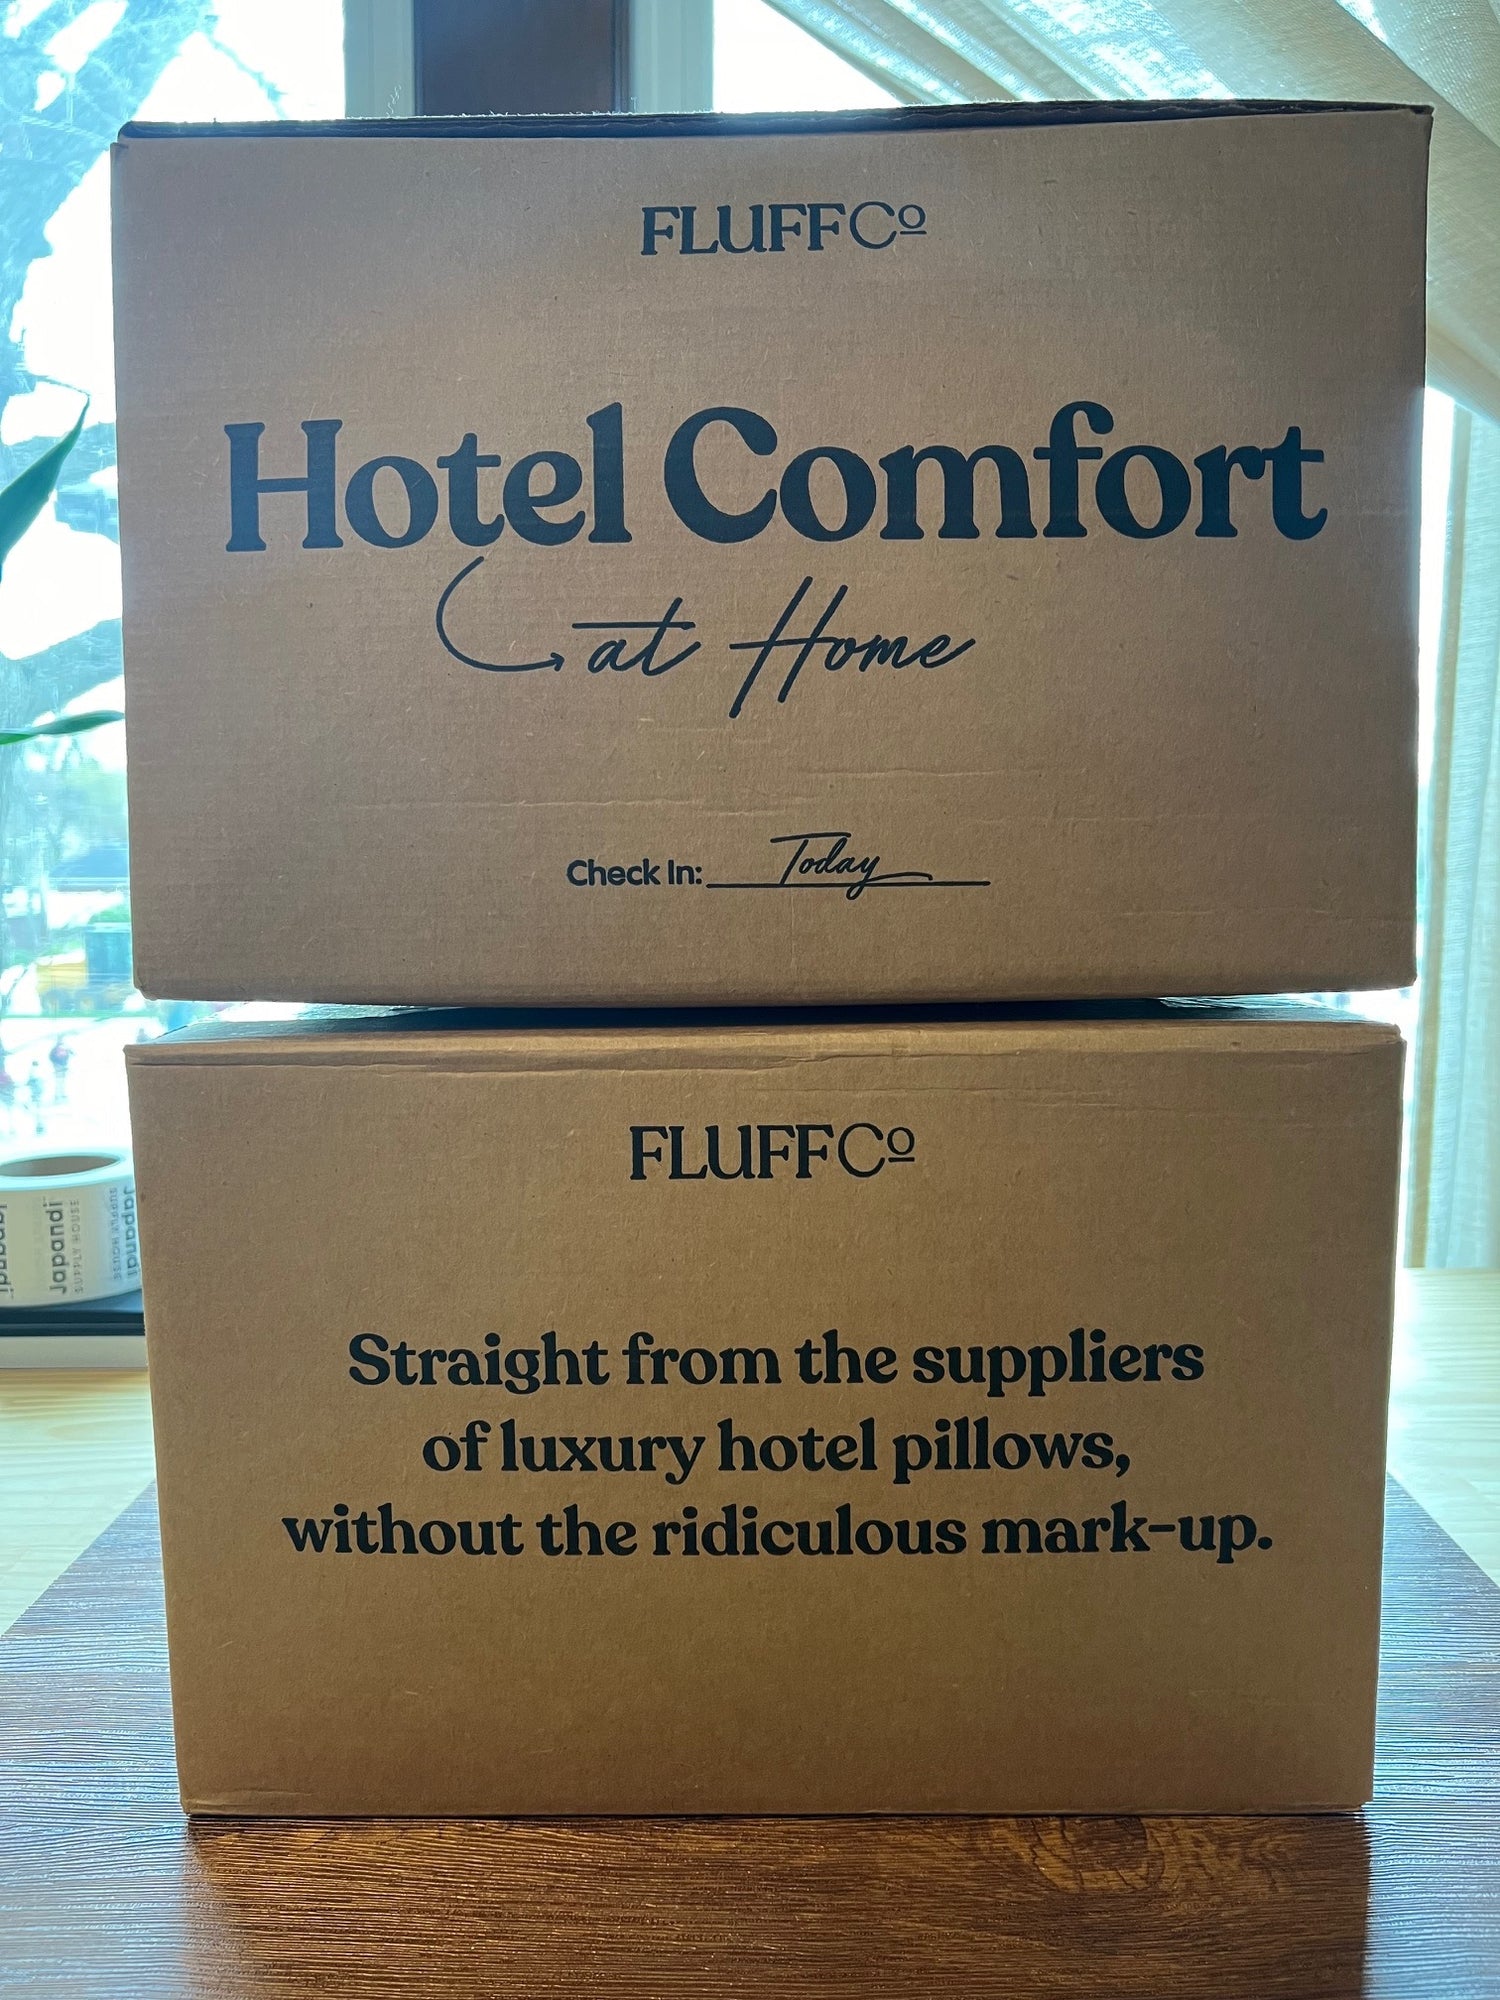 FluffCo Pillows in Box